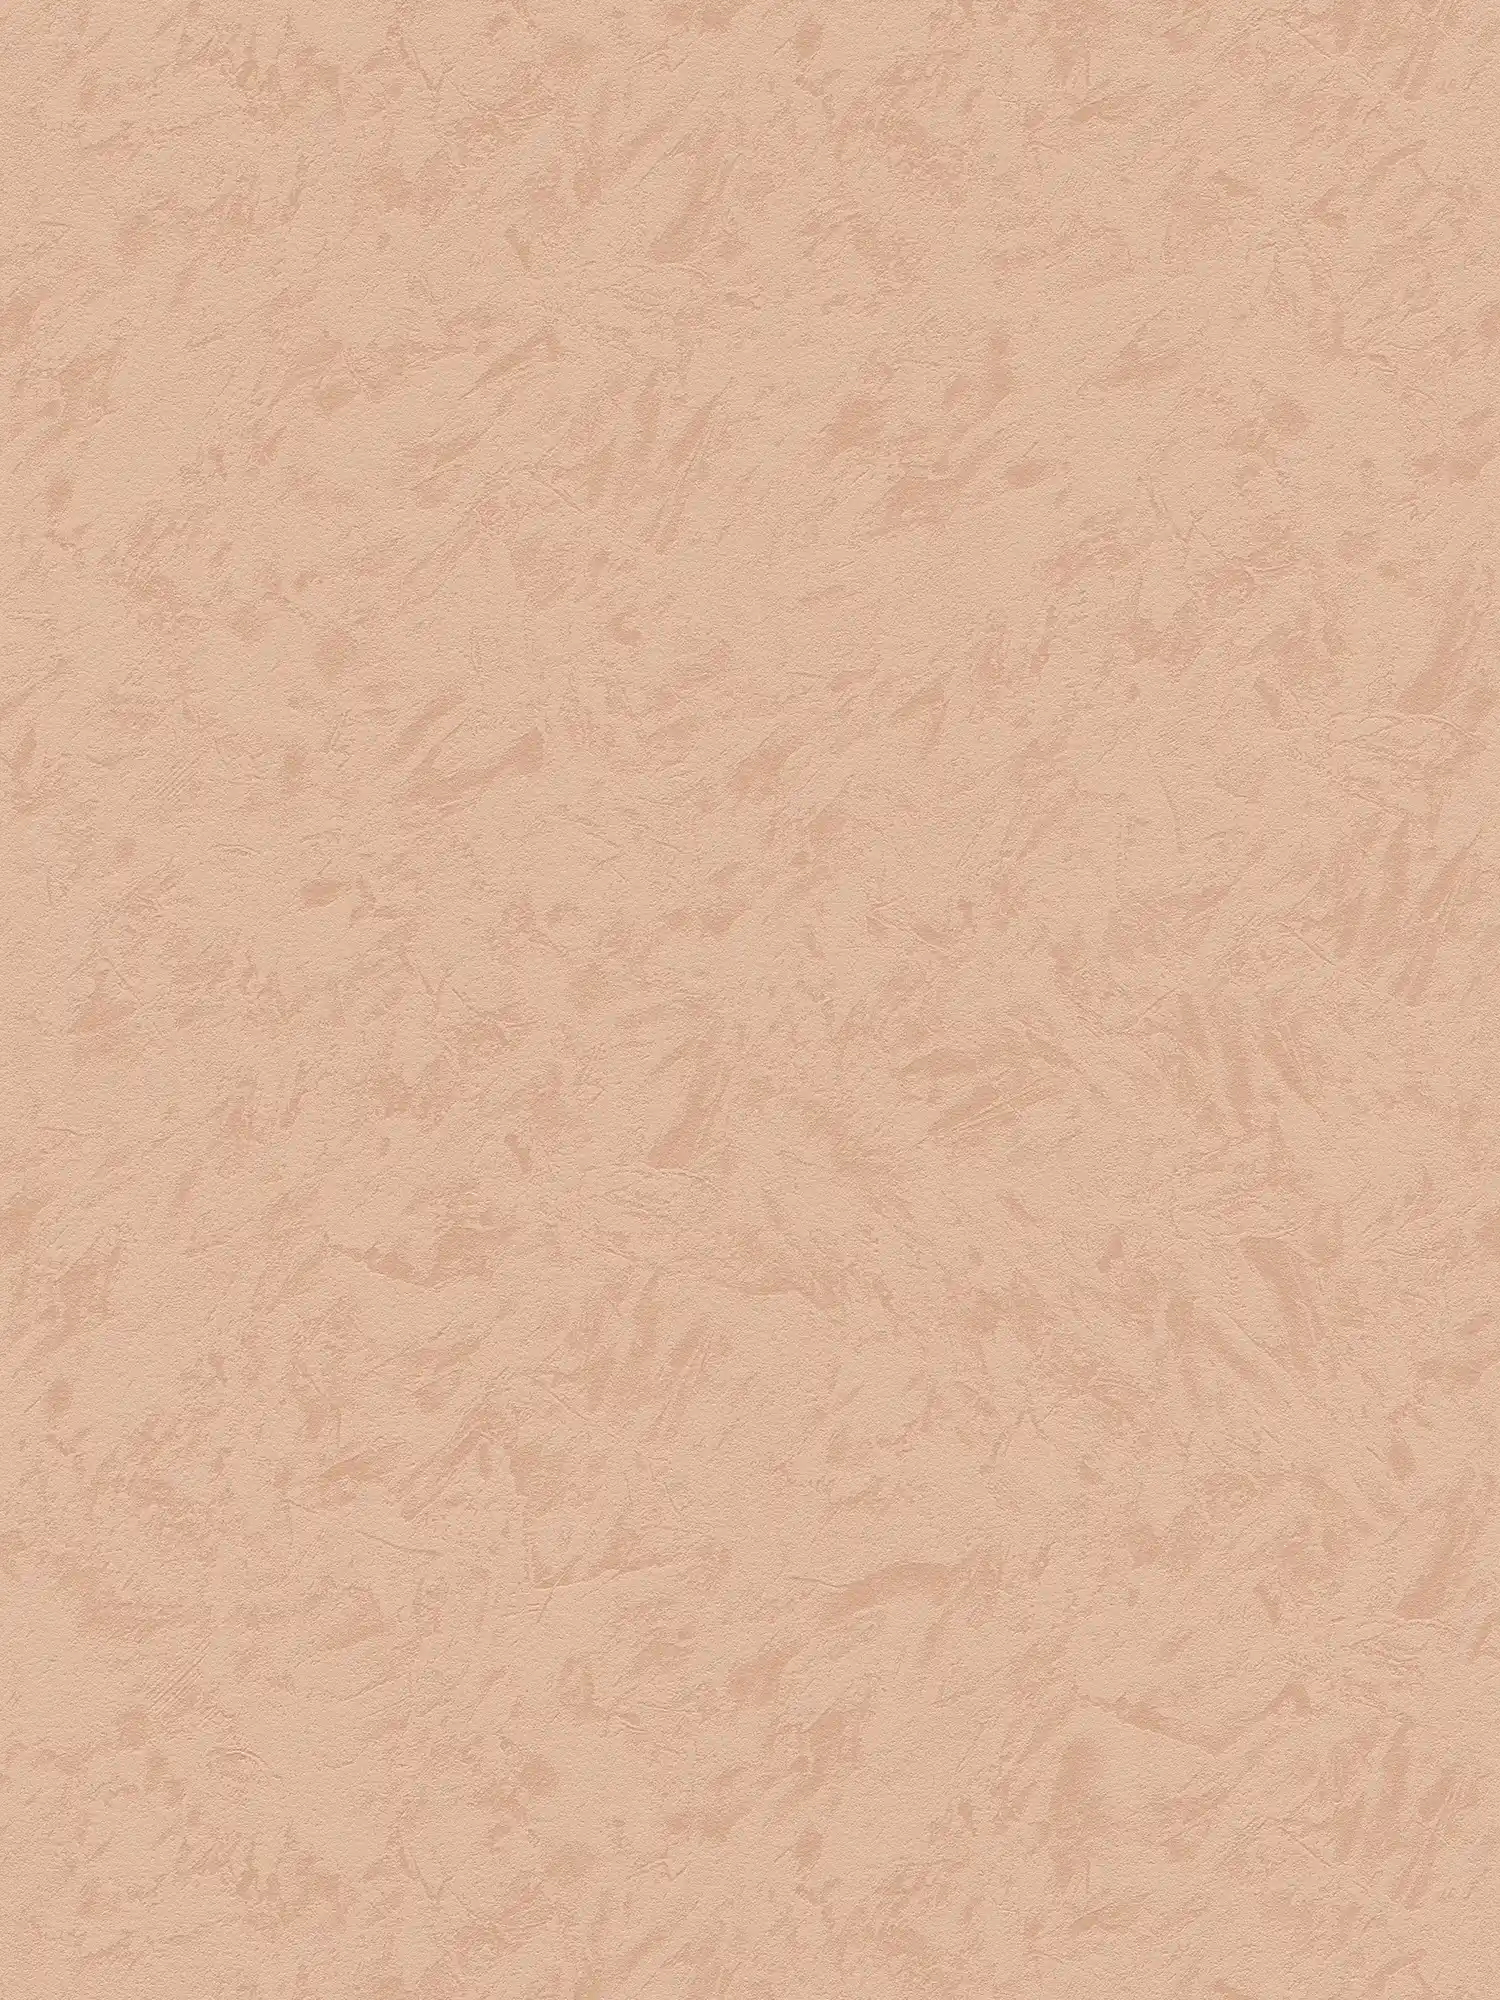             Papel pintado no tejido de color terracota con aspecto de limpieza - naranja
        